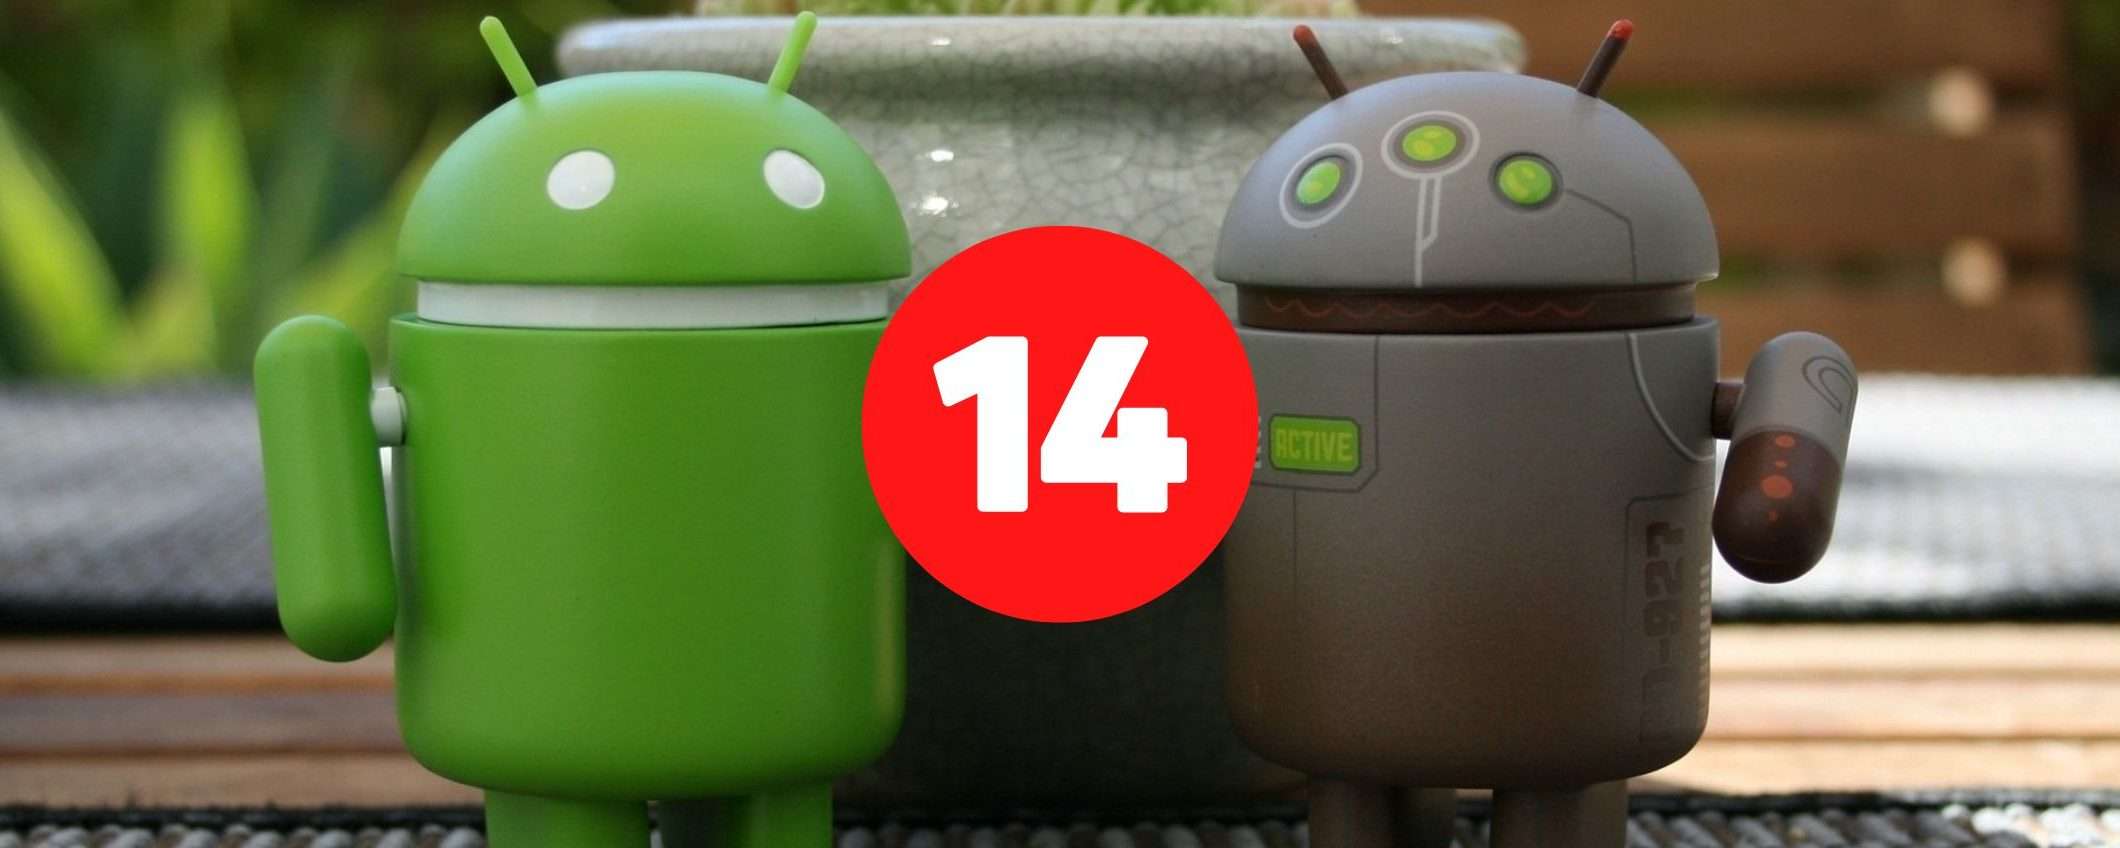 Android 14, si parla già della prima beta: quando potrebbe arrivare